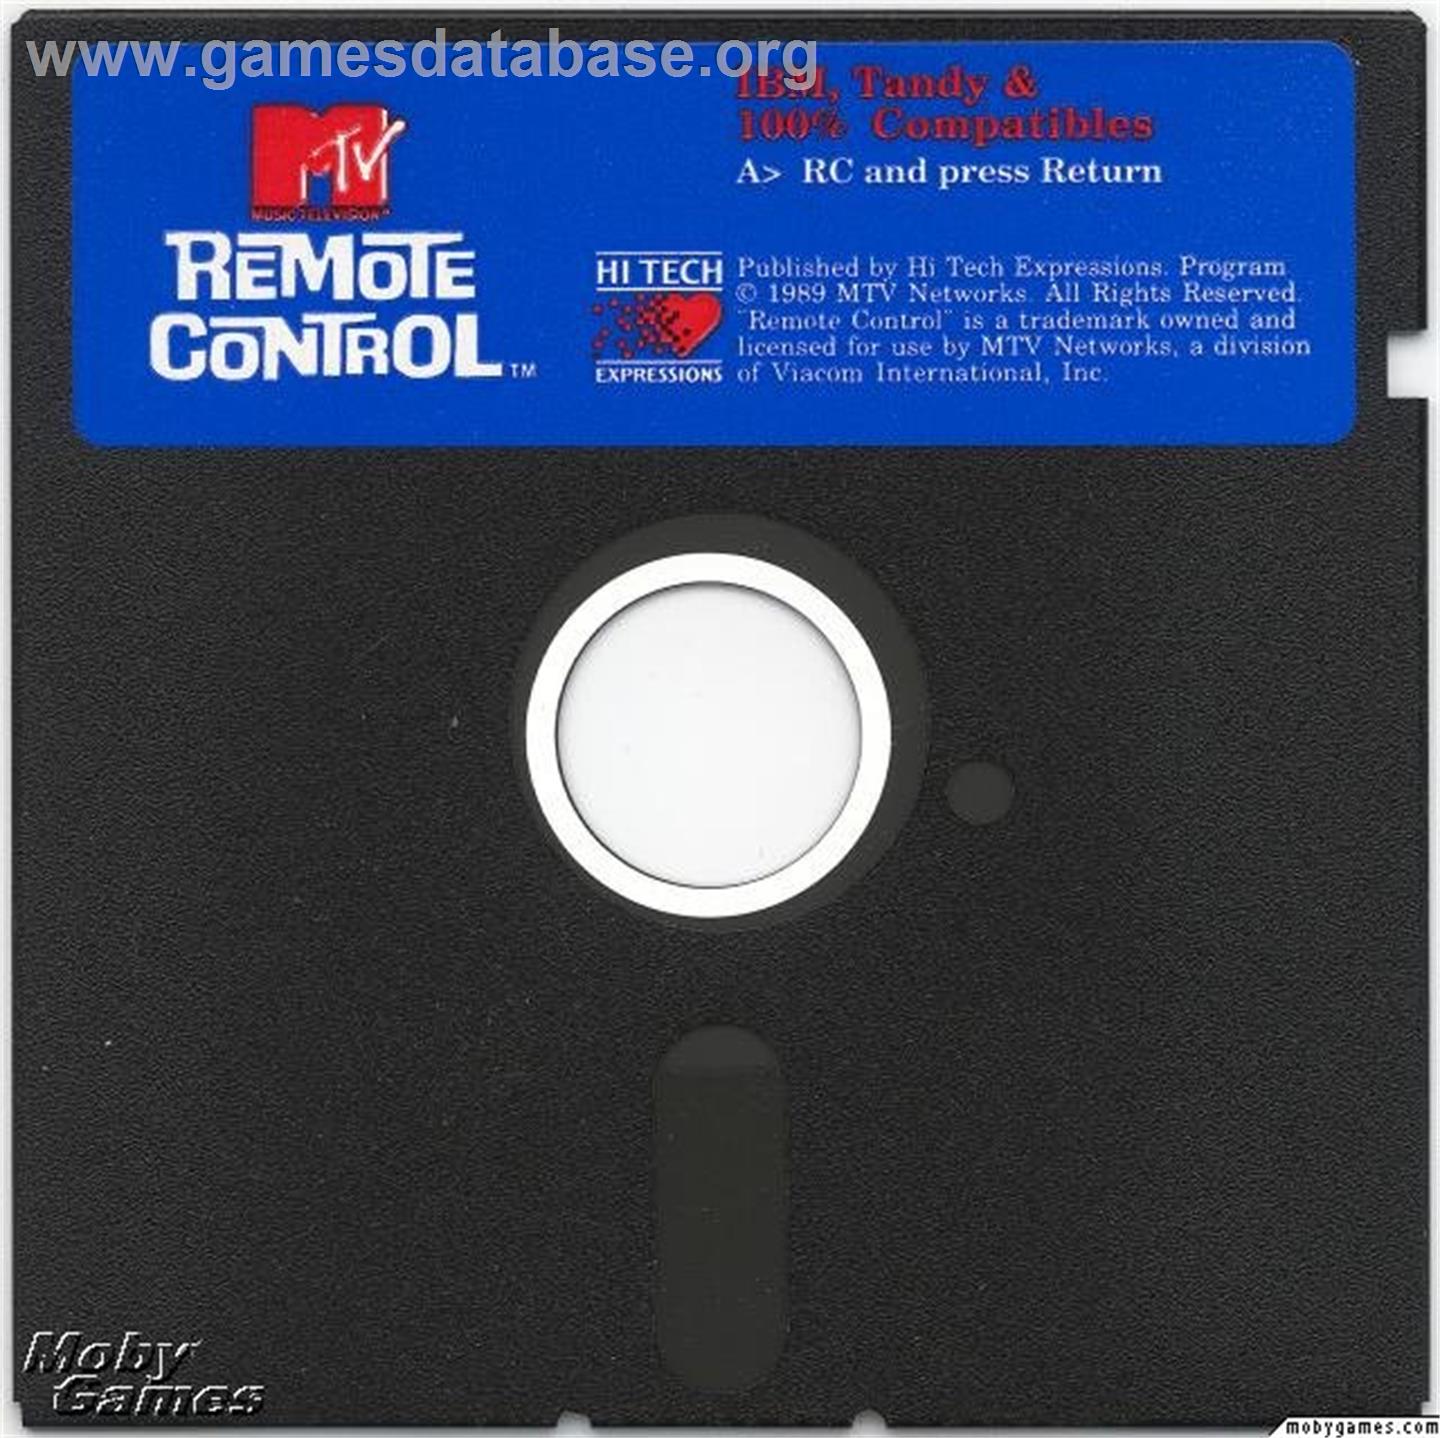 Remote Control - Microsoft DOS - Artwork - Disc